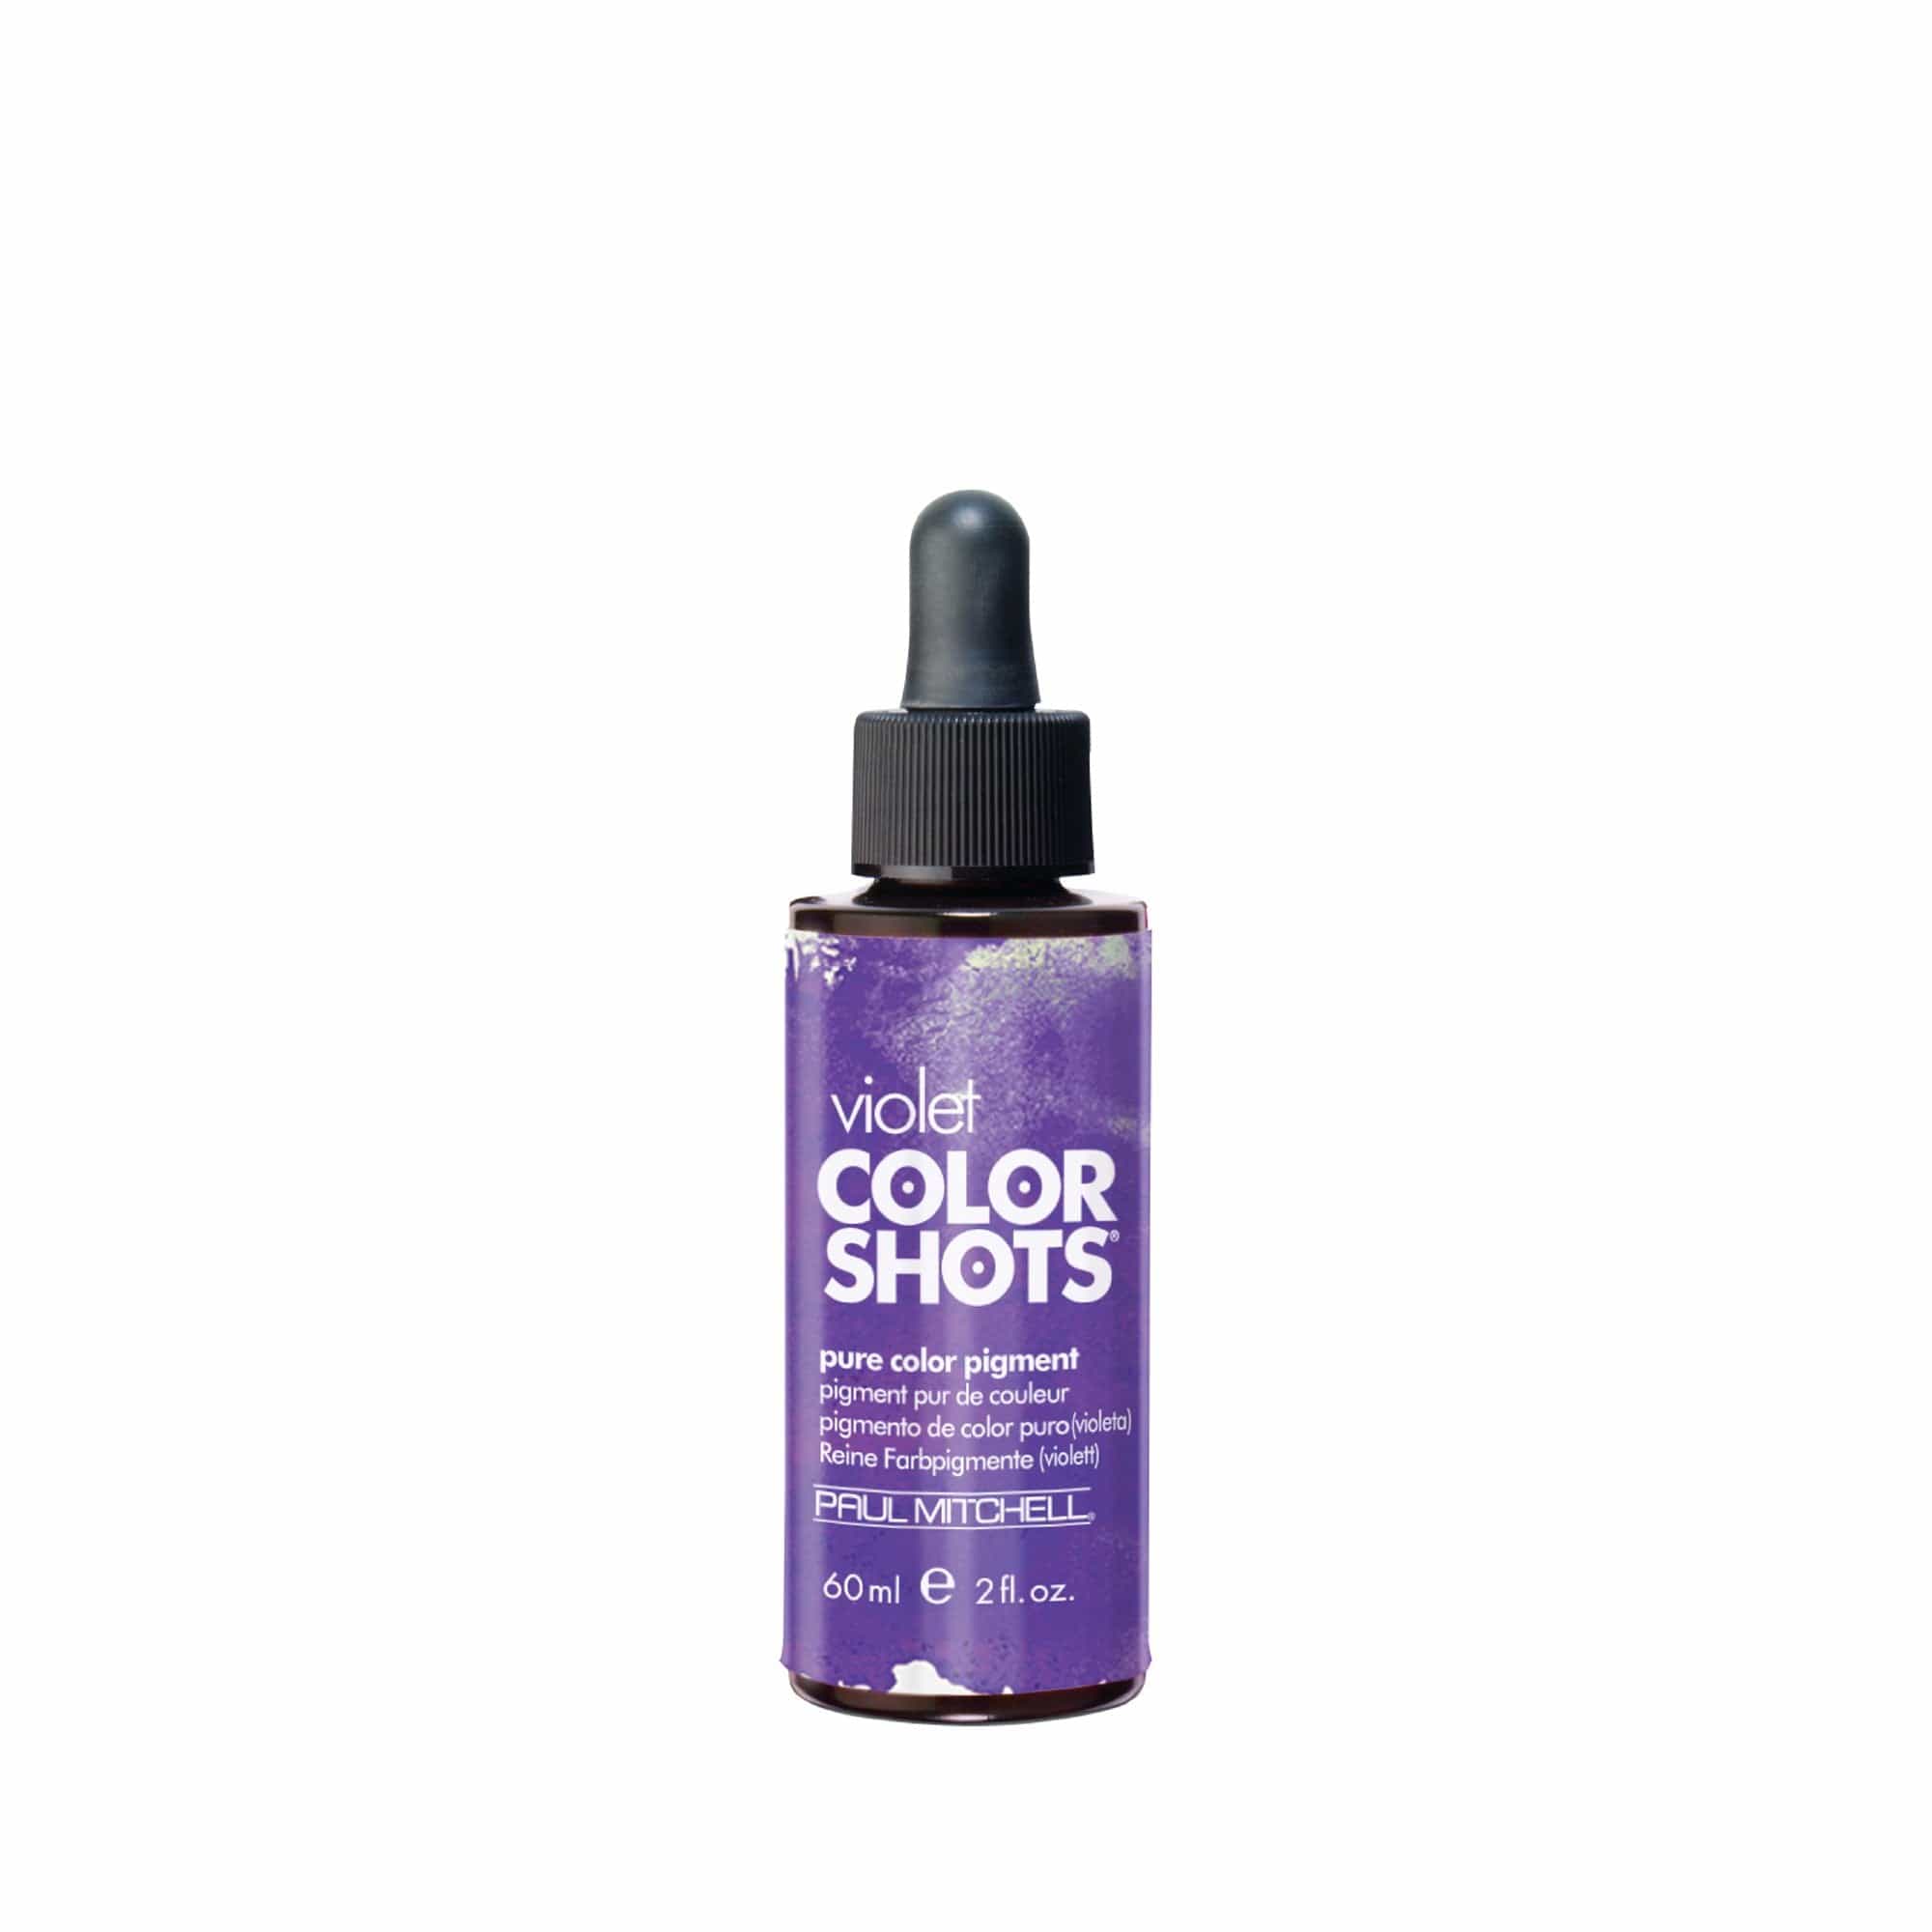 Color Shots Violet 60ml HAIR - Paul Mitchell - Luxe Pacifique